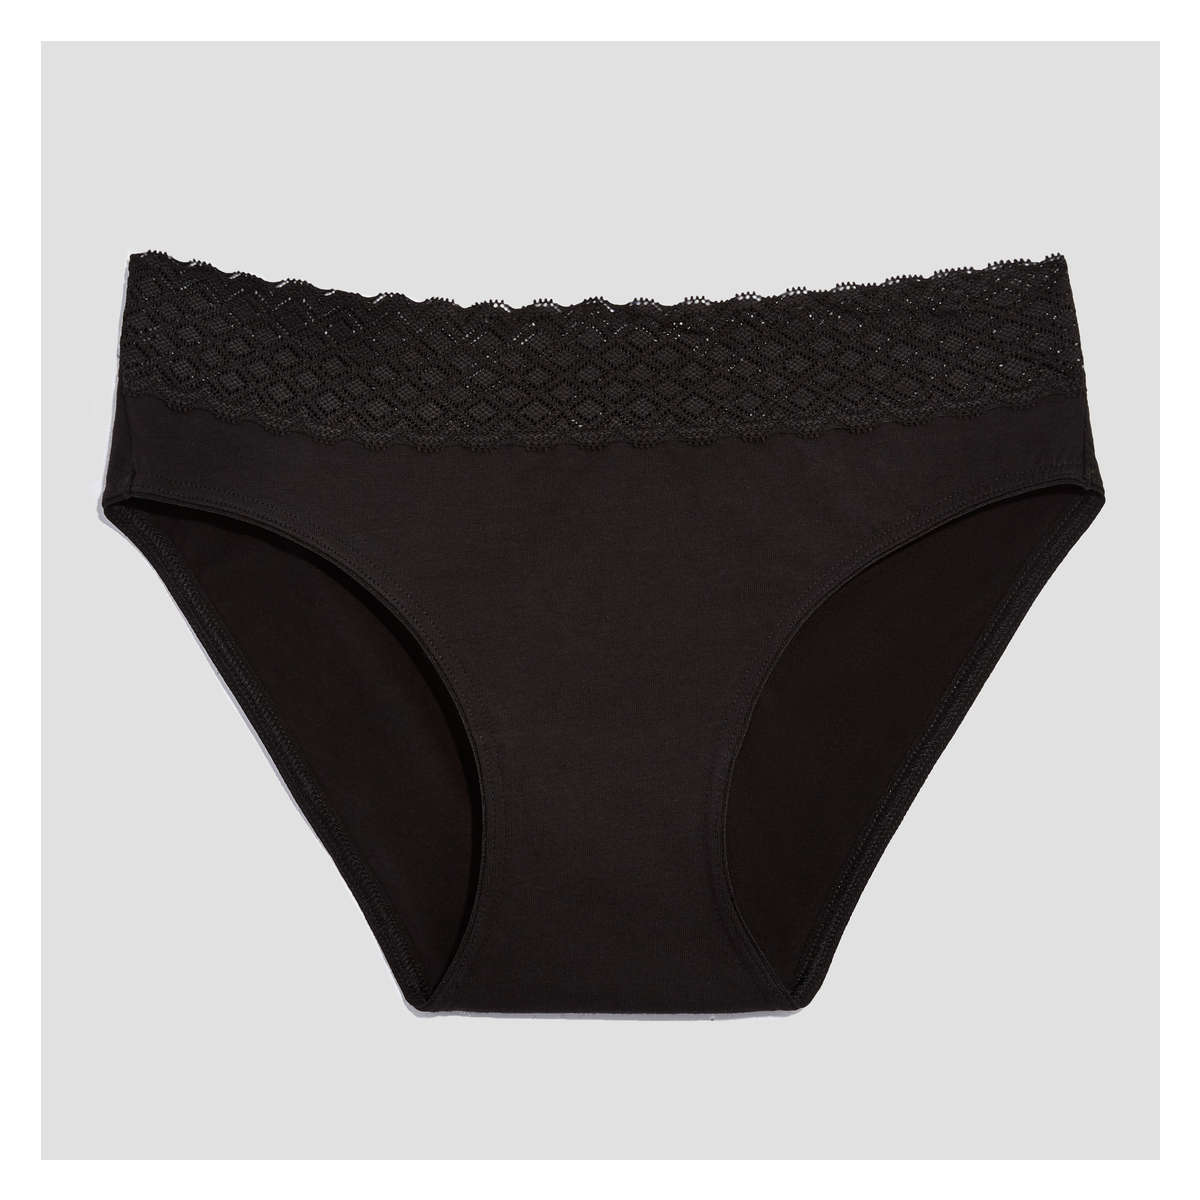 Ladies Black Bikini Briefs 100% Cotton Knicker Womens Underwear